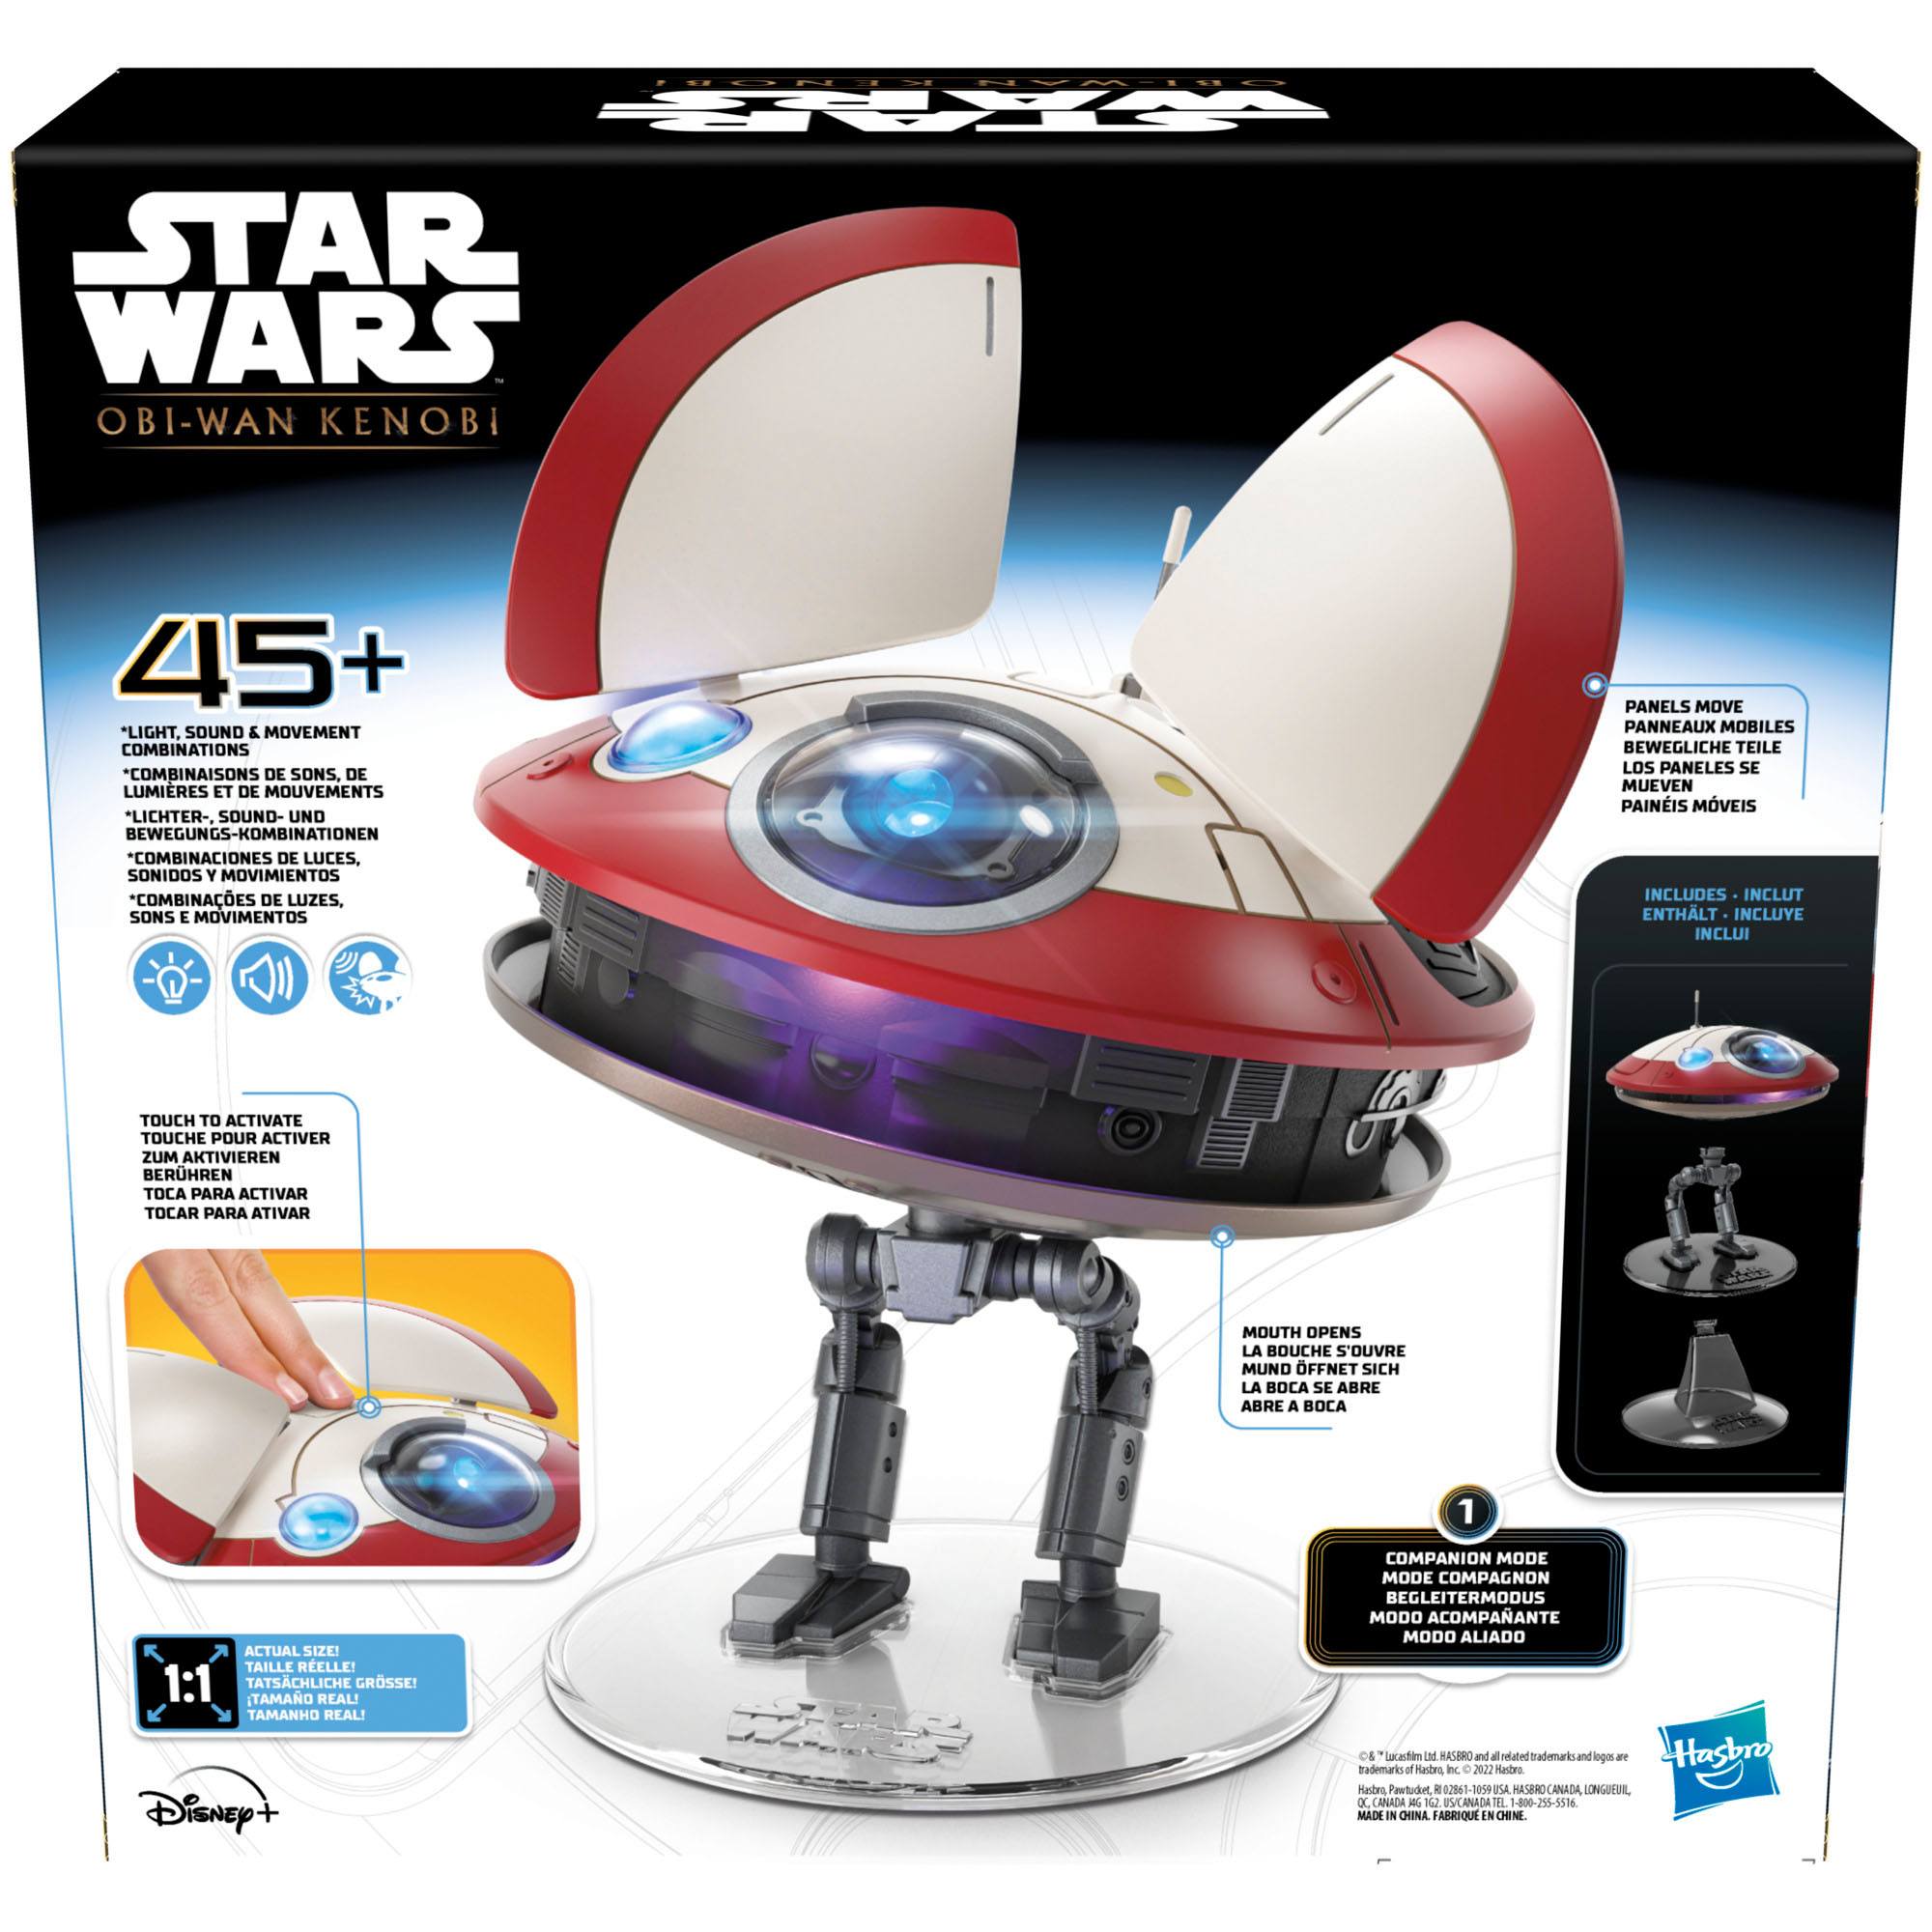 Star Wars: Obi-Wan Kenobi Elektronische Figur LO-LA59 (Lola) Animatronic Edition 15 cm HASF3918 5010994137342